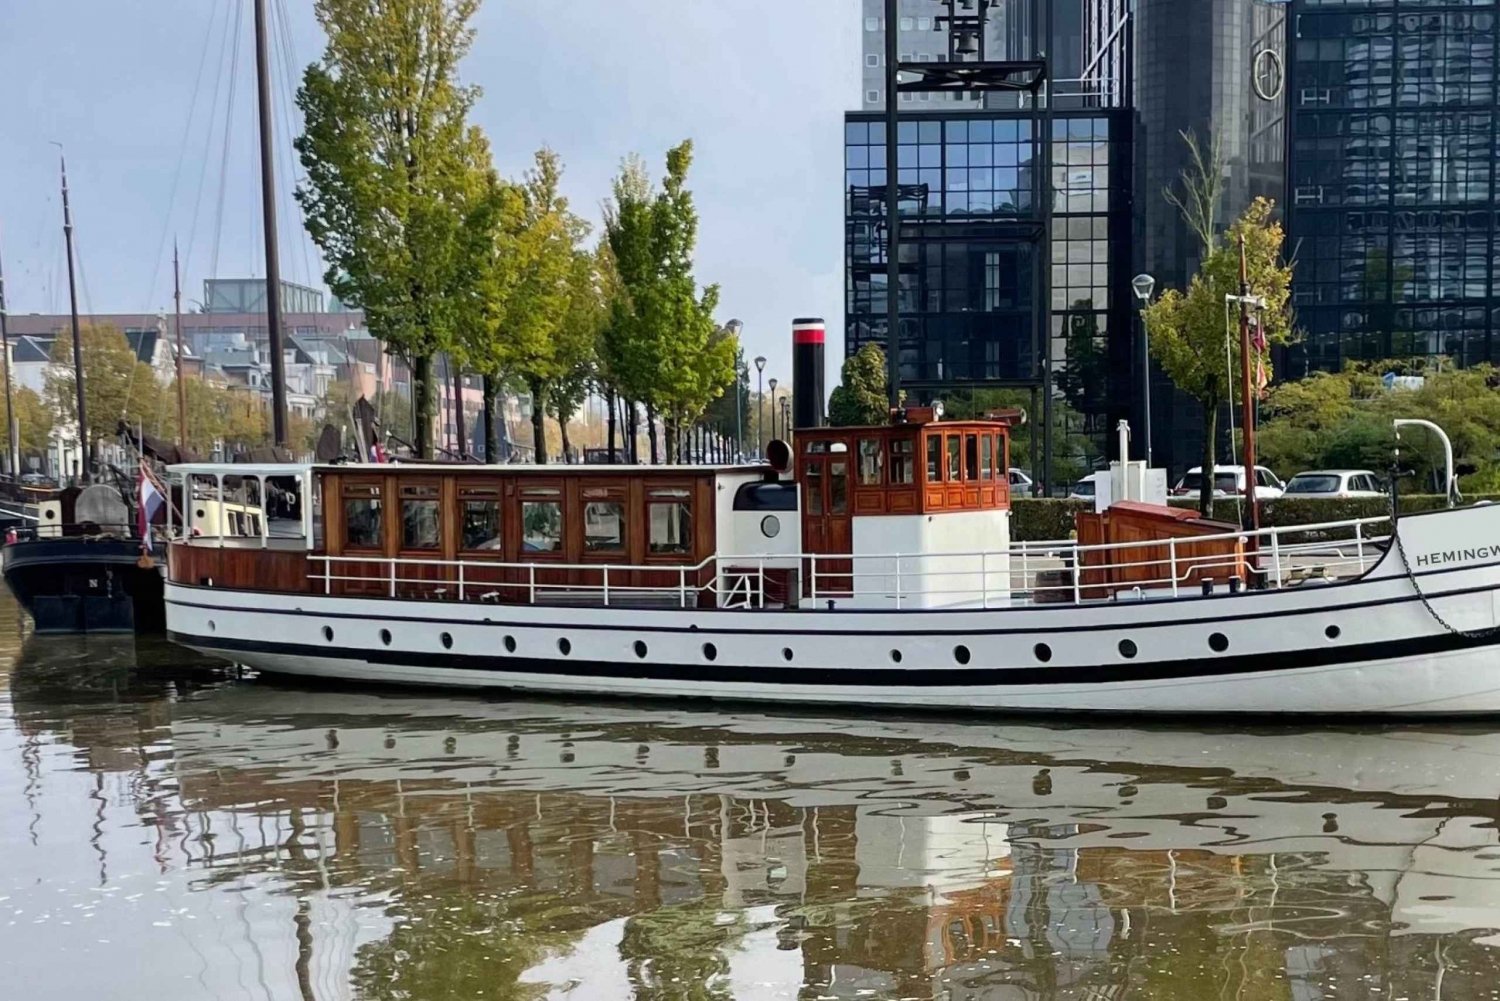 Berlin: Historisk guidet sightseeingtur med båt i sentrum